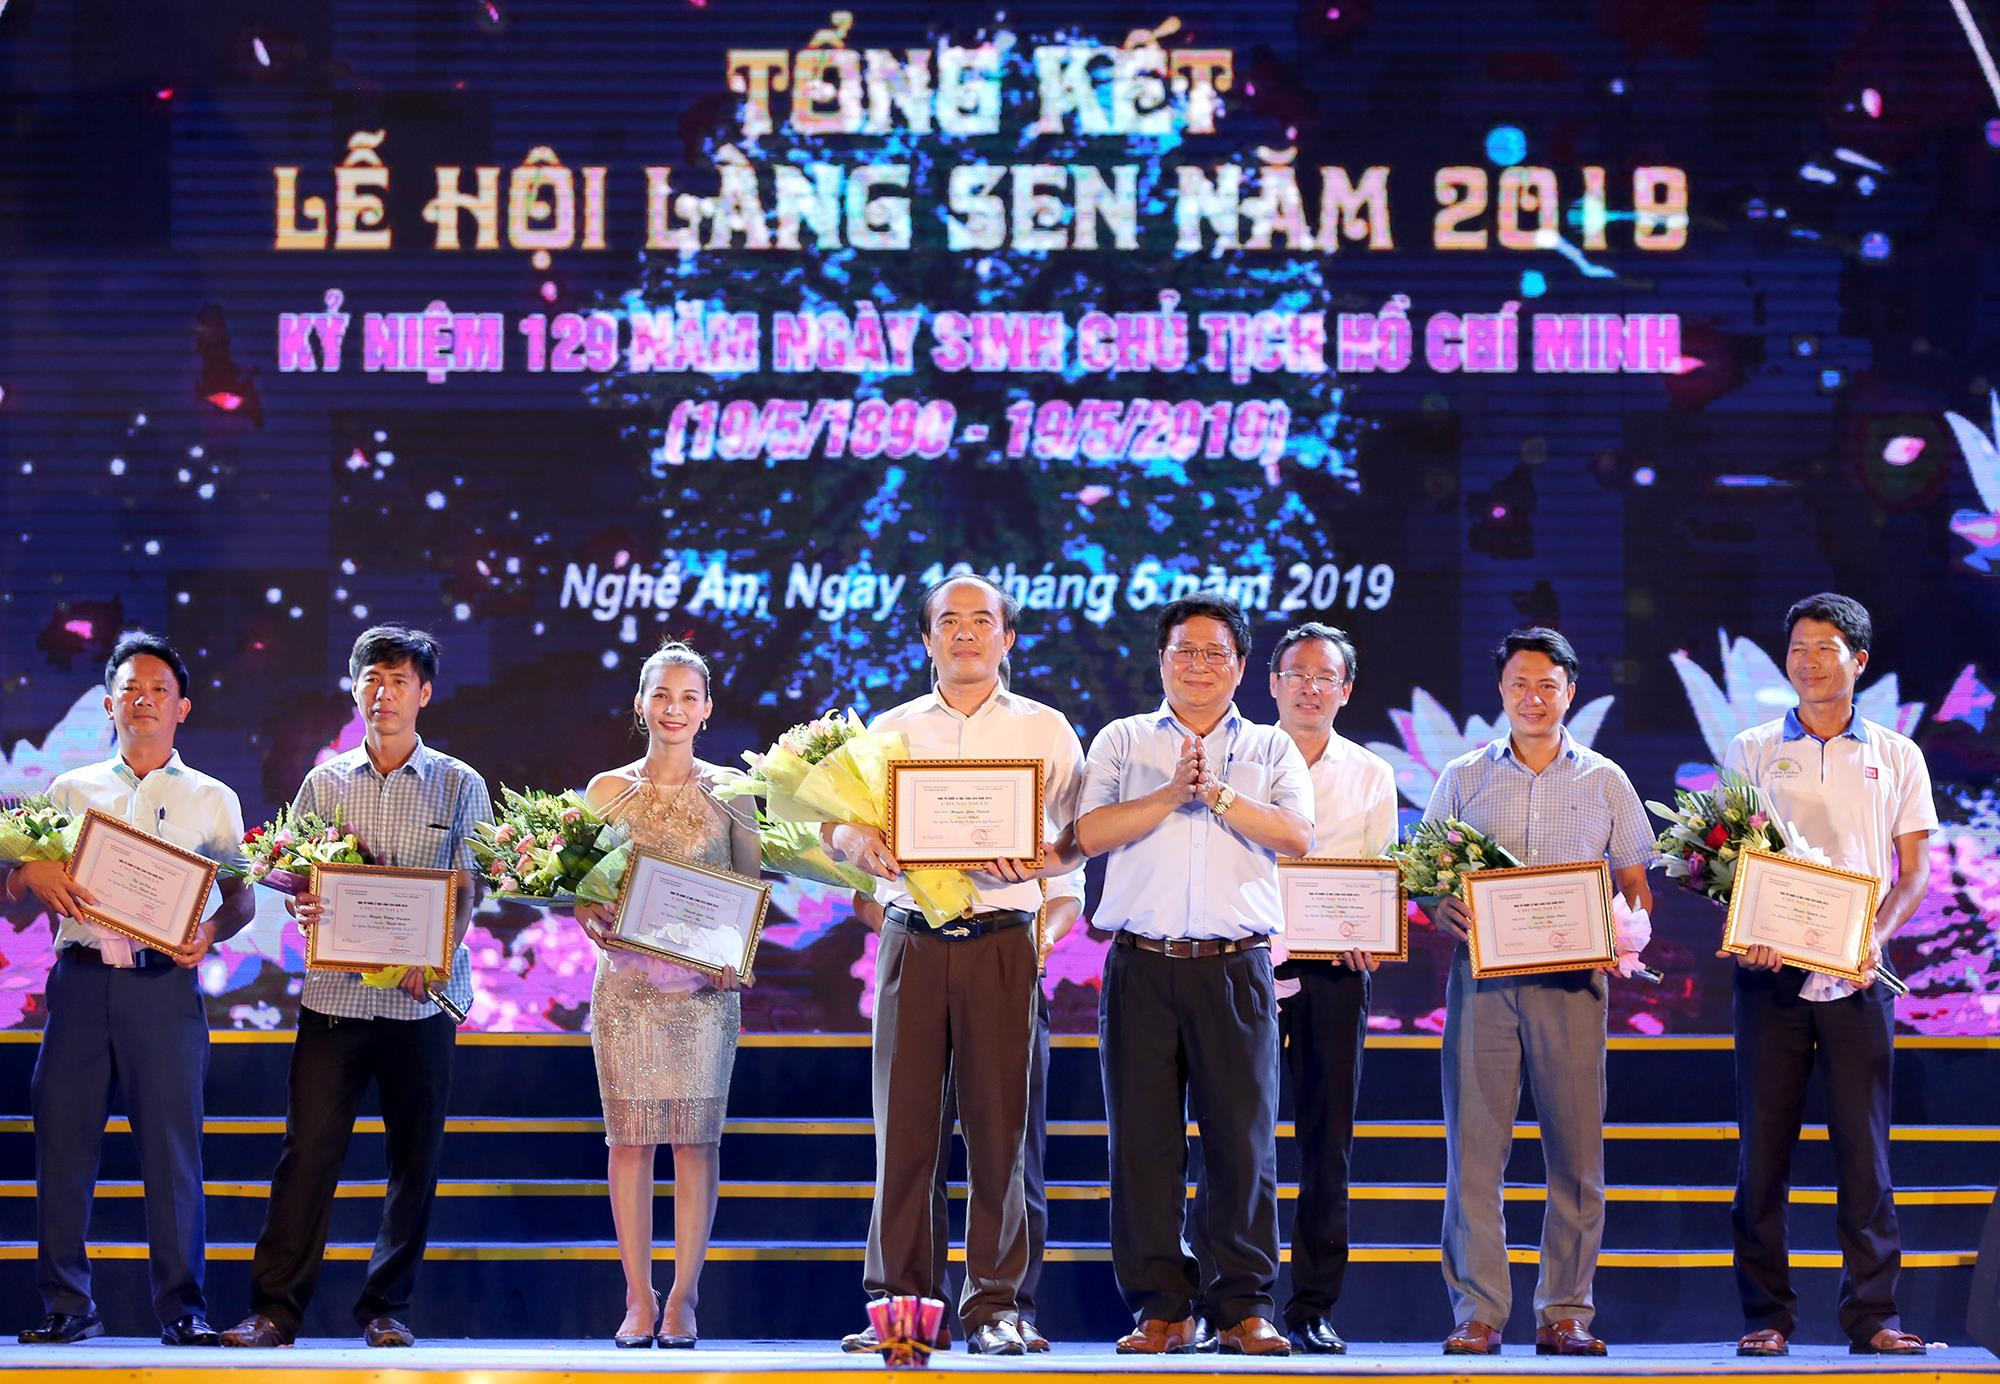 Đồng chí Hồ Mậu Thanh - Ủy viên BCH Đảng bộ tỉnh, Giám đốc Sở Văn hóa và Thể thao trao giải Nhất Hội thi Liên hoan 